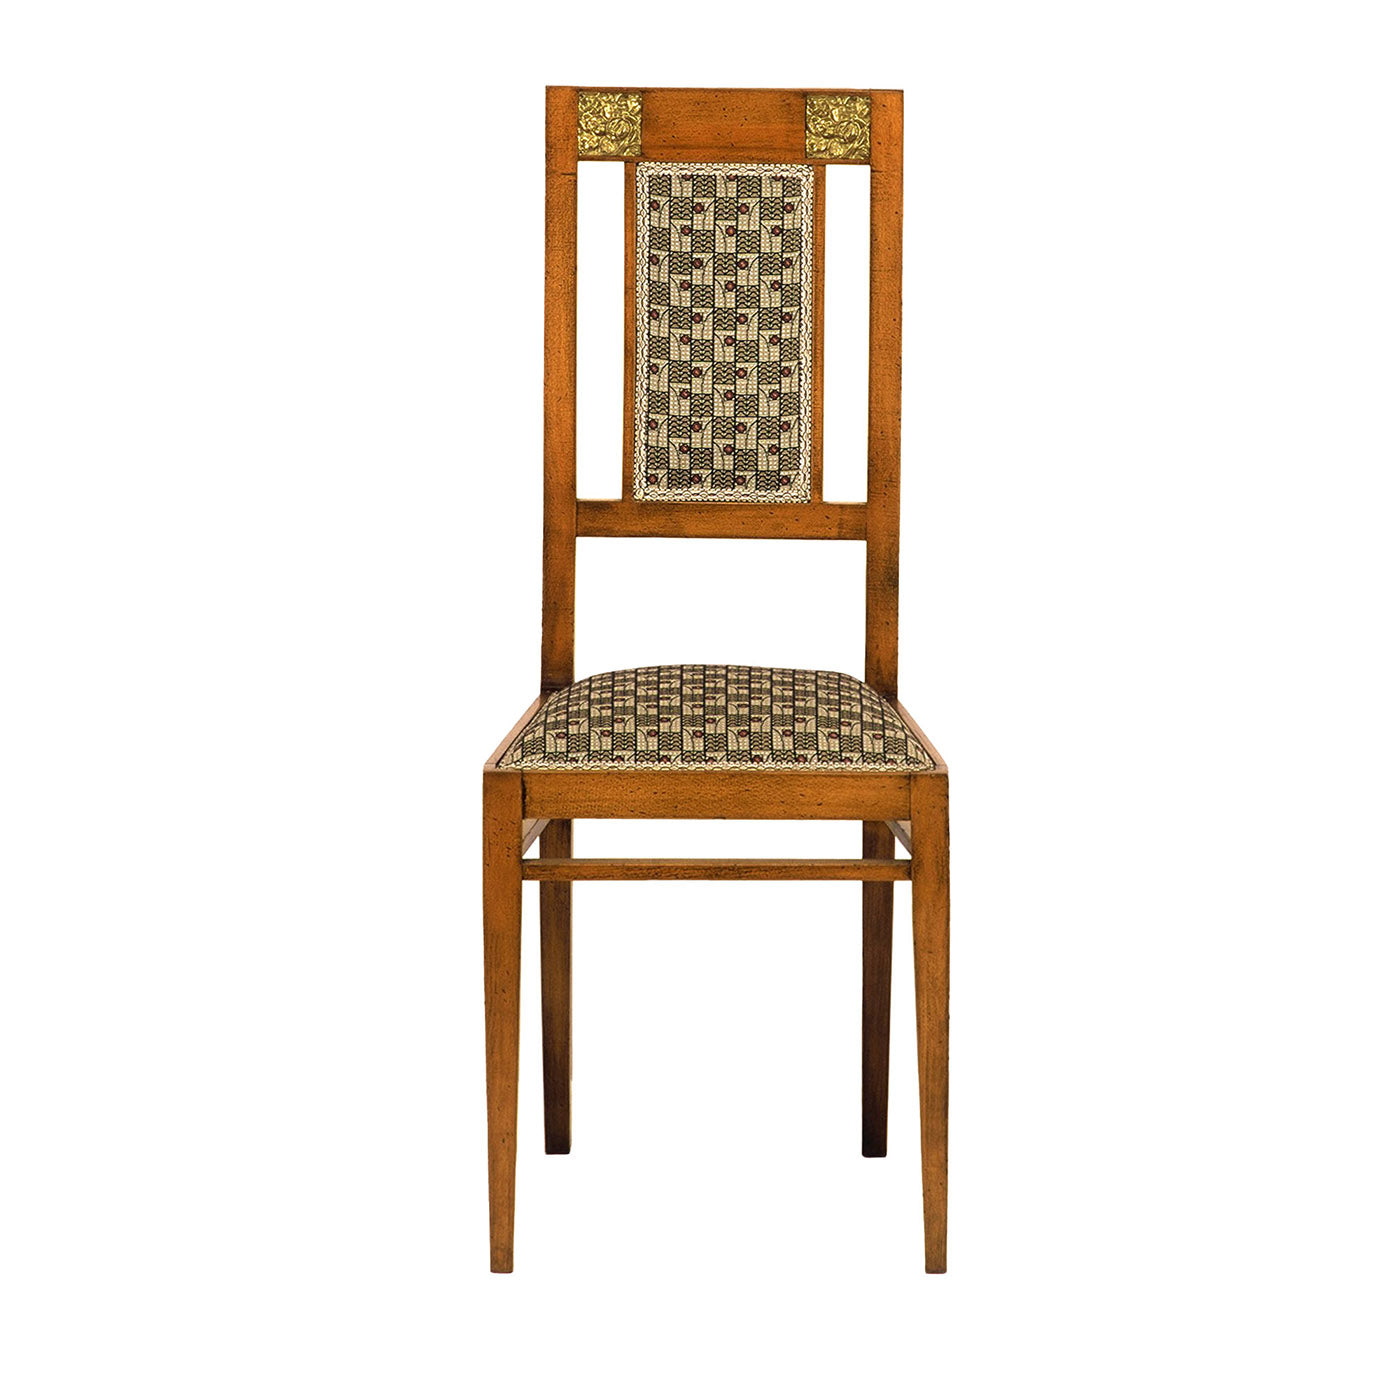 Chaise en hêtre de style Art nouveau italien - Vue principale